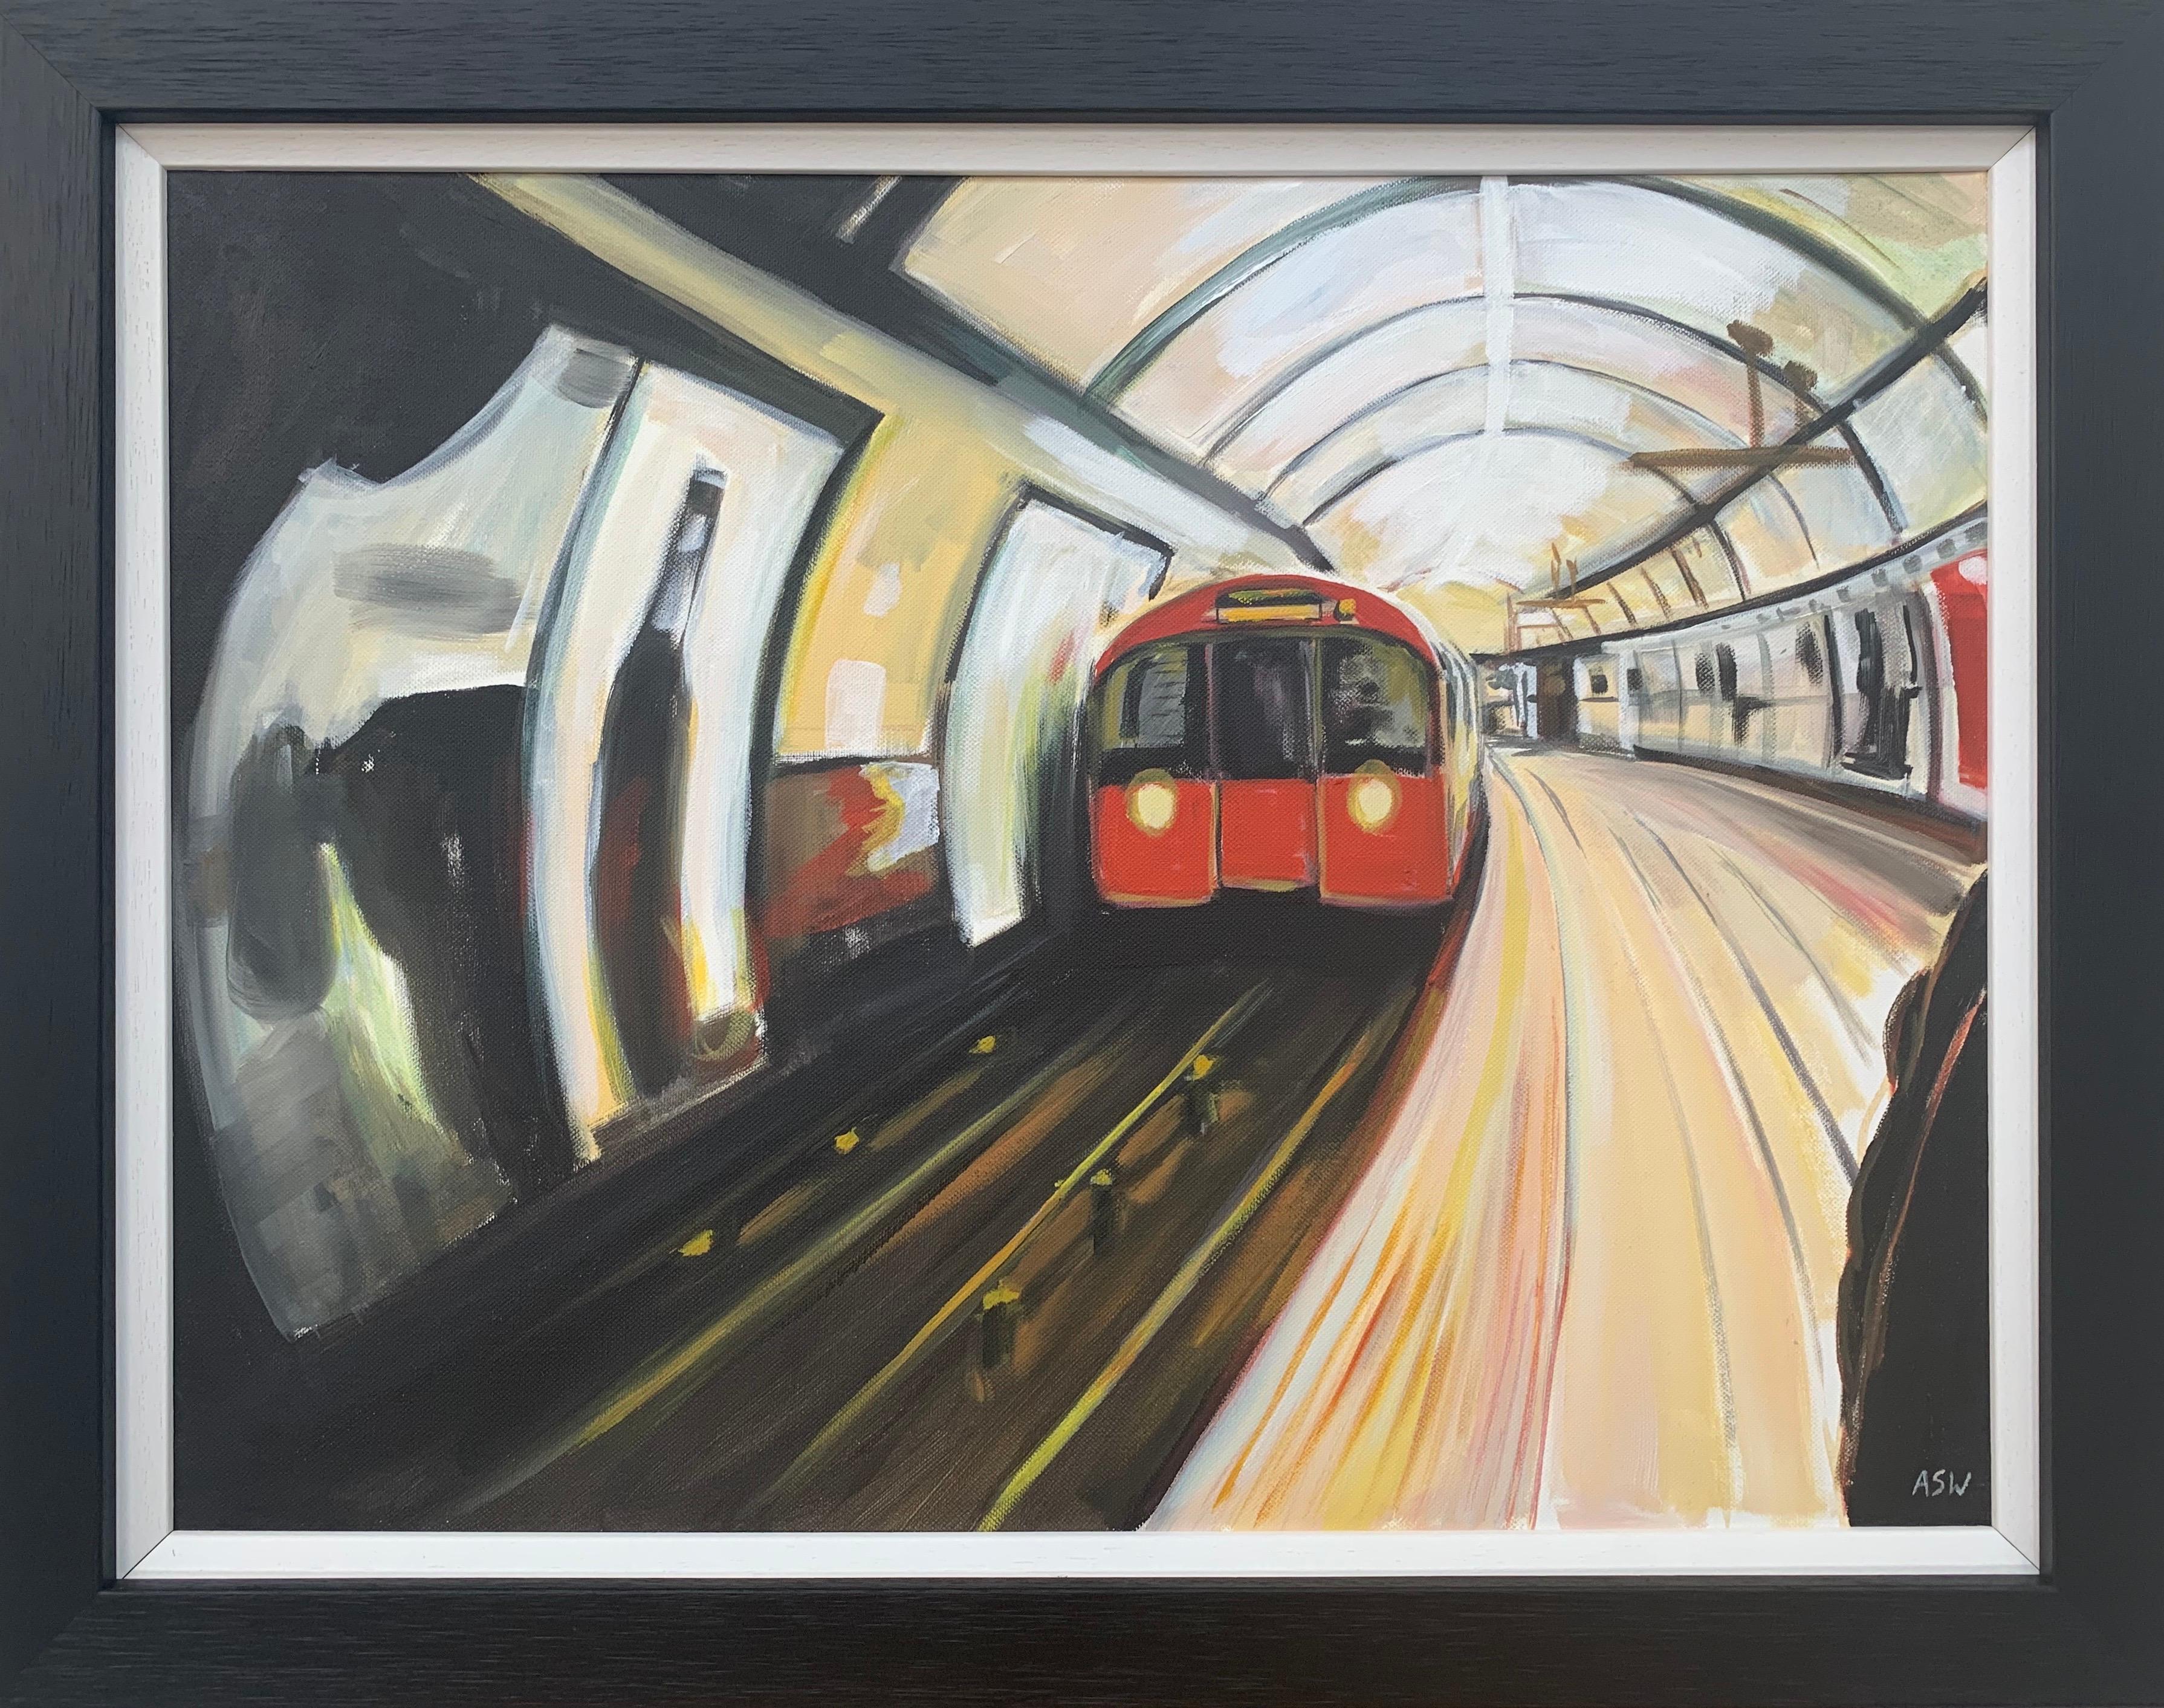 Originalgemälde der Londoner U-Bahn von zeitgenössischem Stadtkünstler